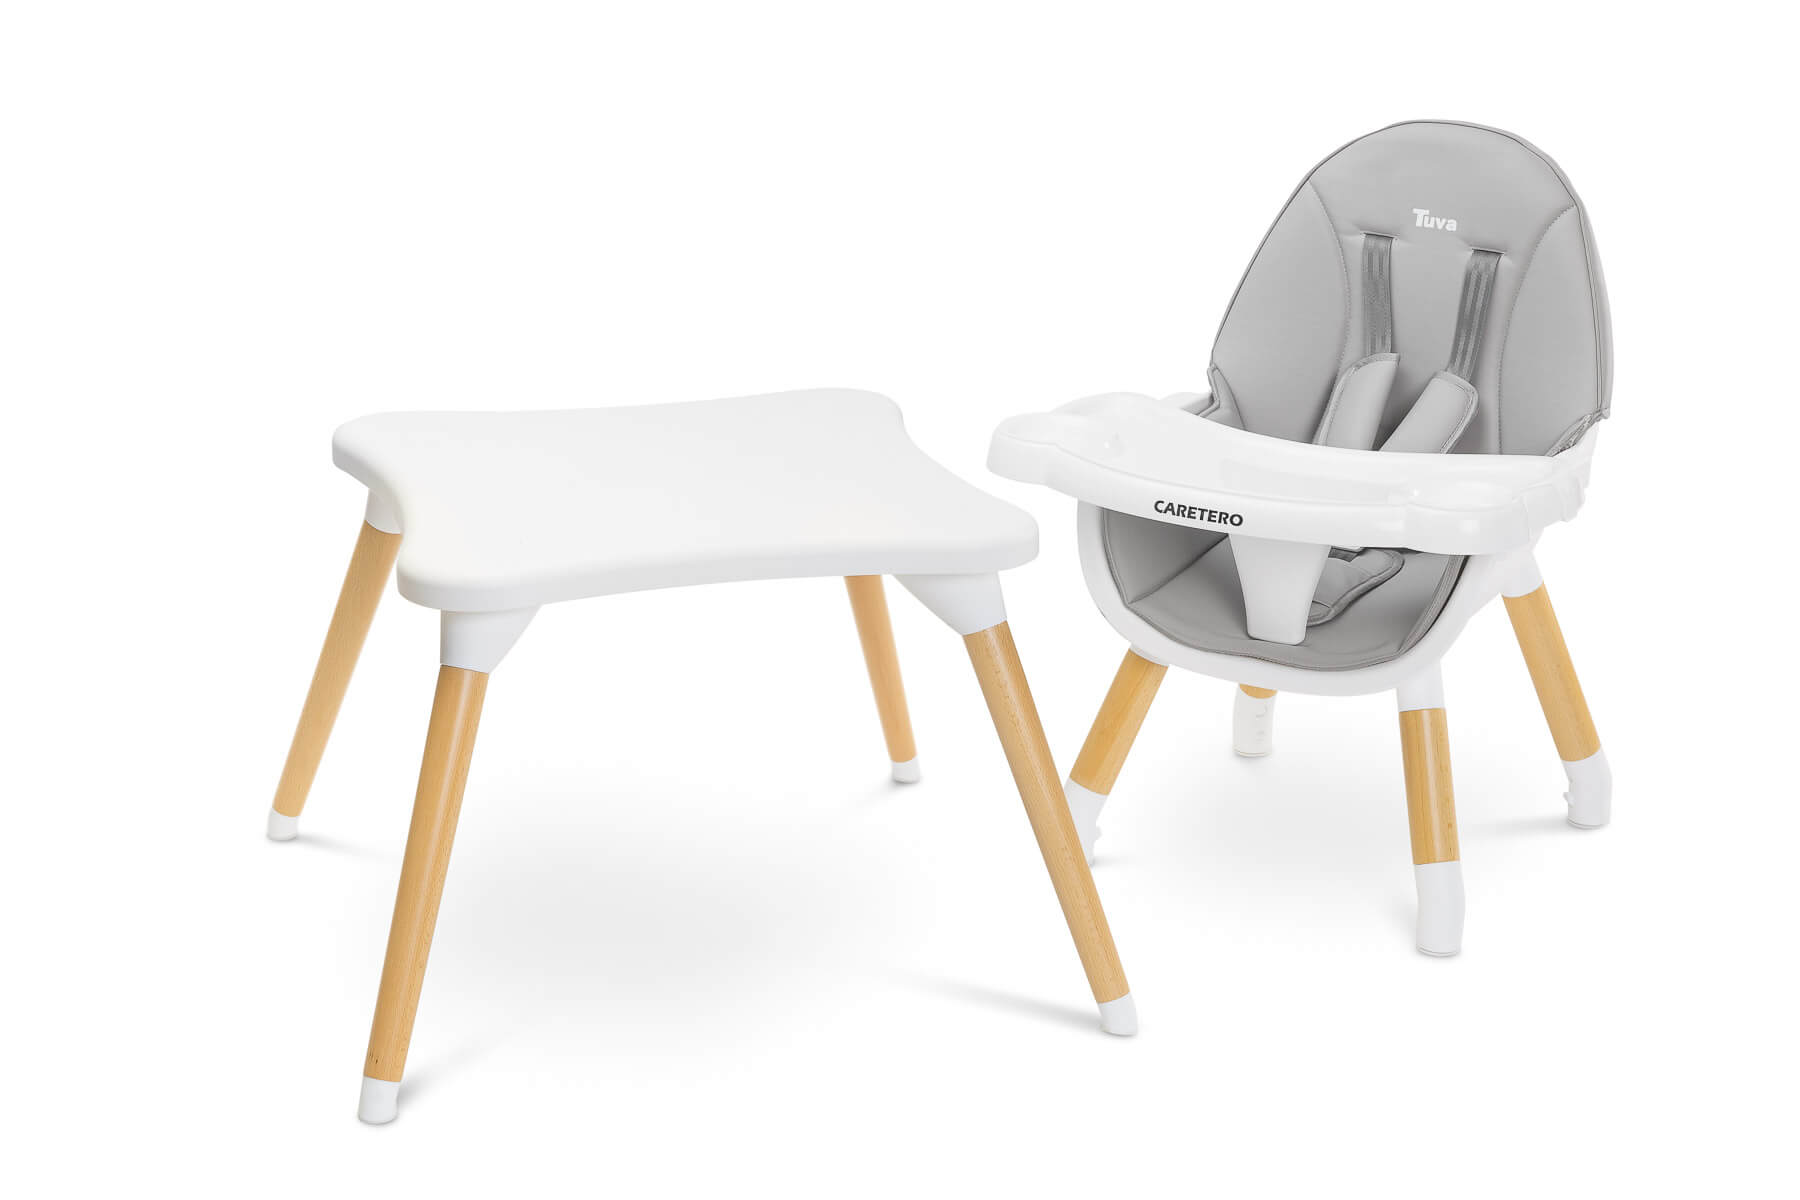 aangrenzend volume Beukende Kinderstoel 3 in 1 Tuva grijs, van stoel tot bijzet tafel! | Sevils